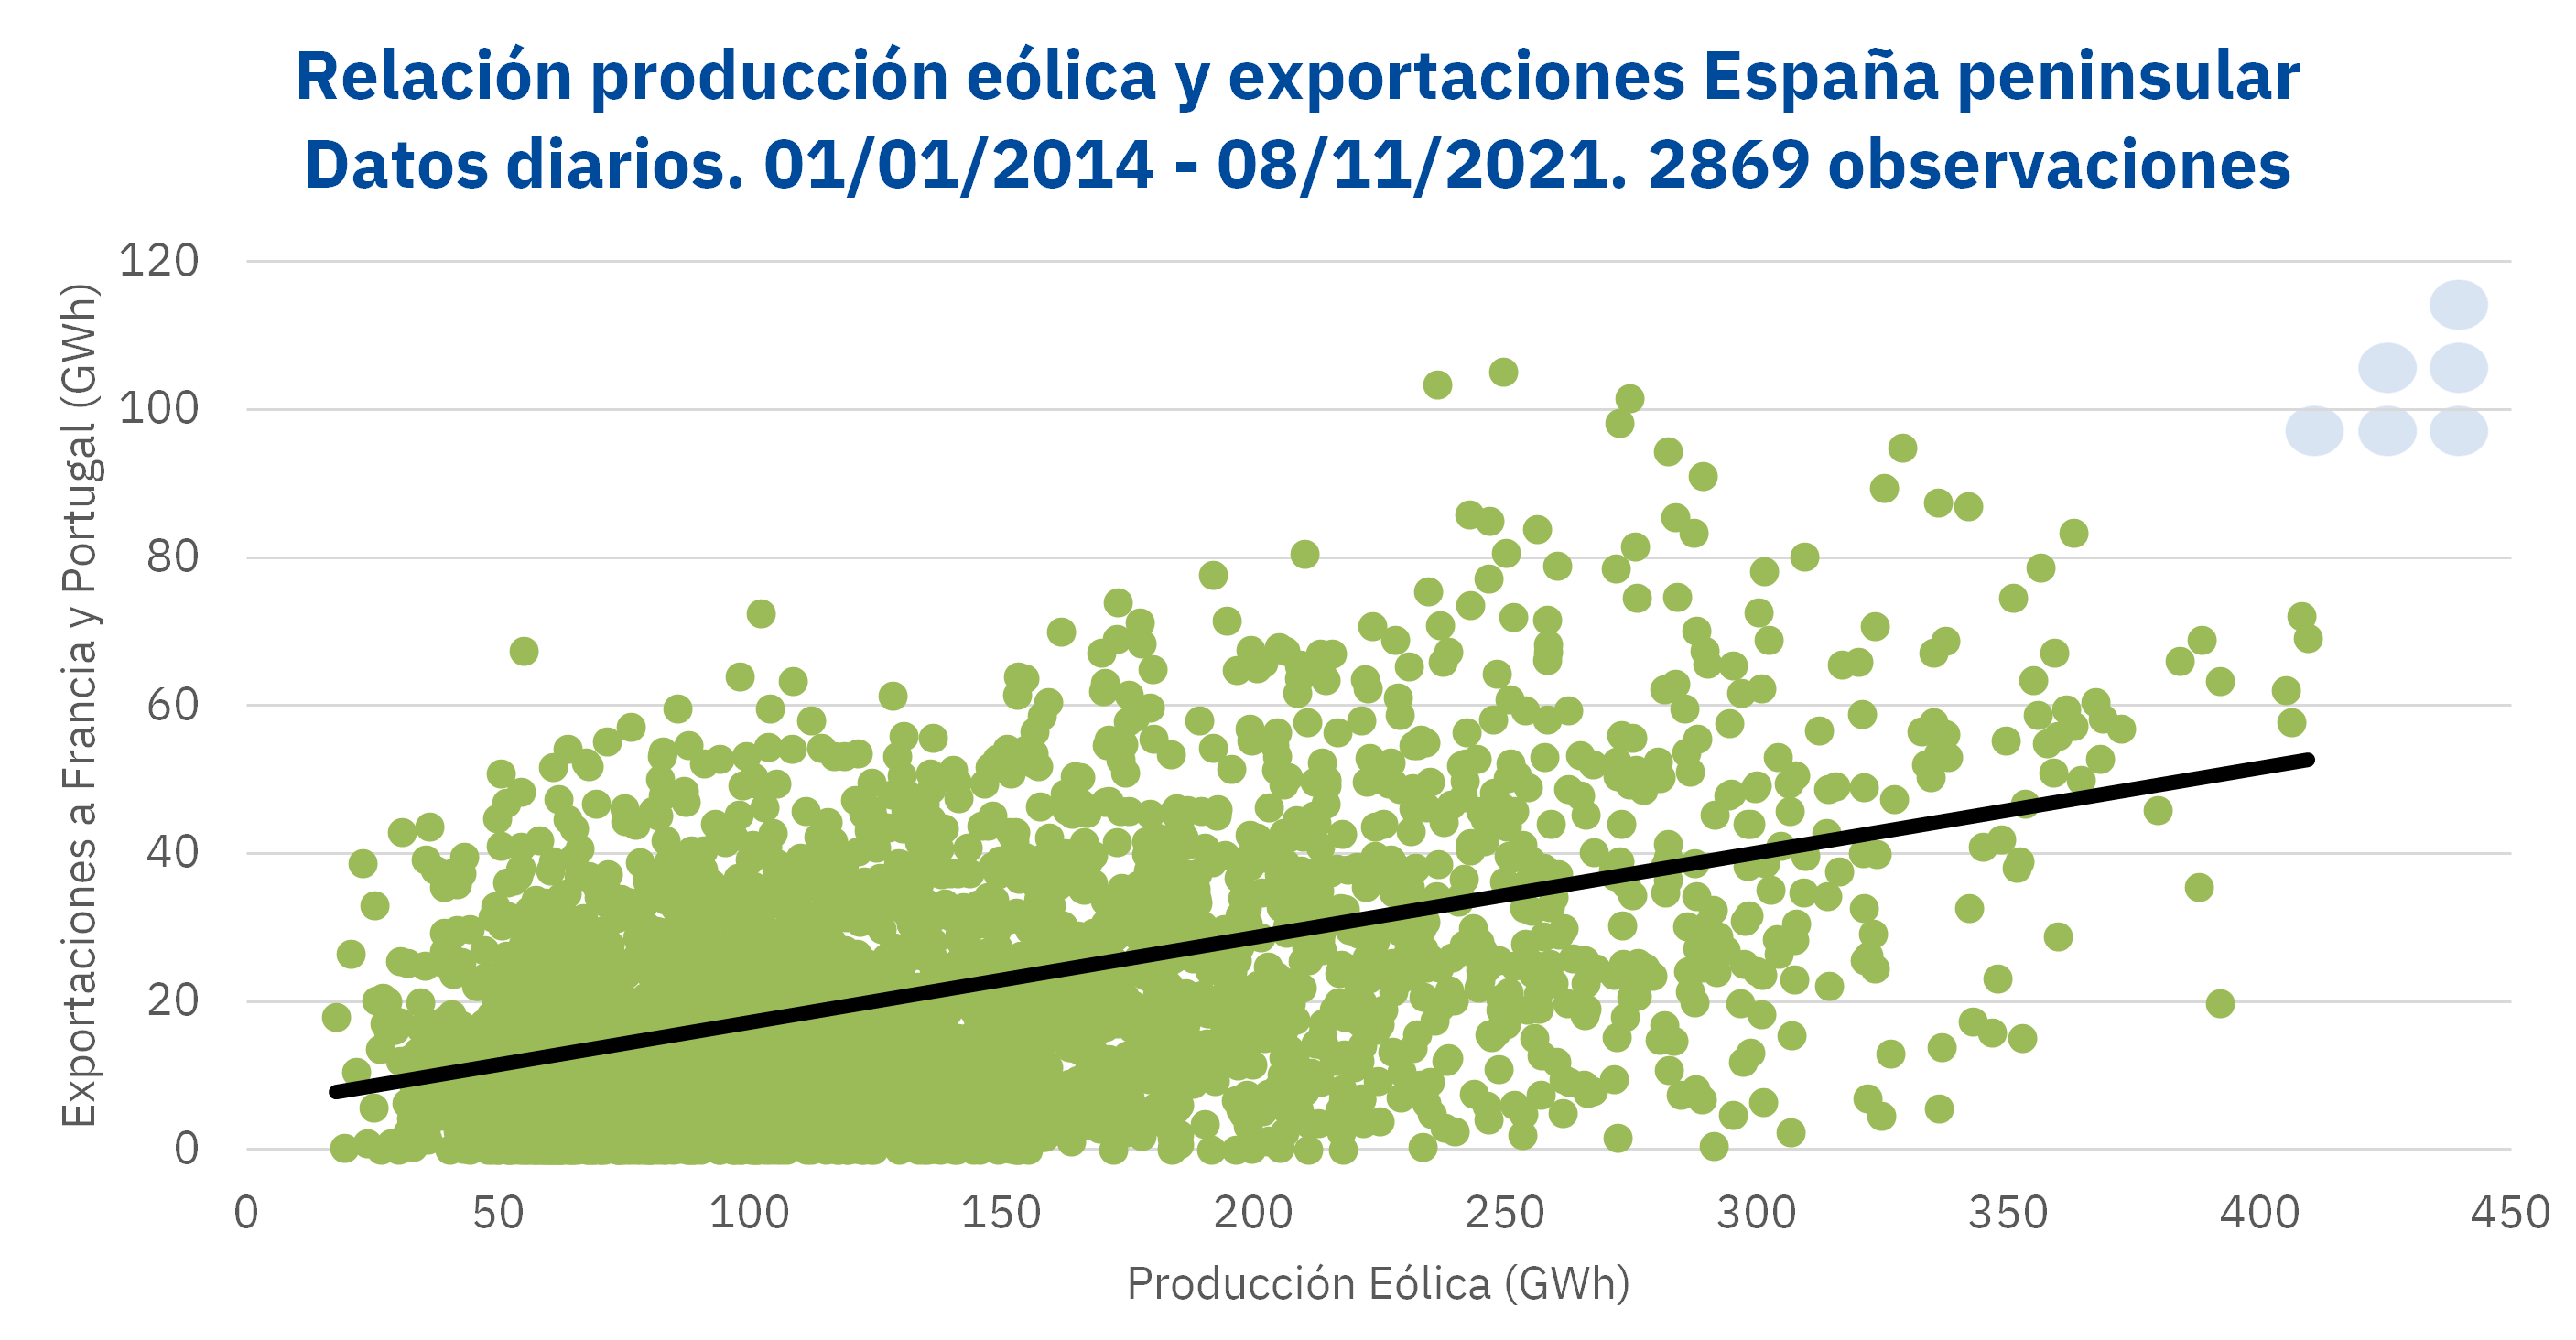 AleaSoft - Relacion produccion eolica exportaciones espanna peninsular